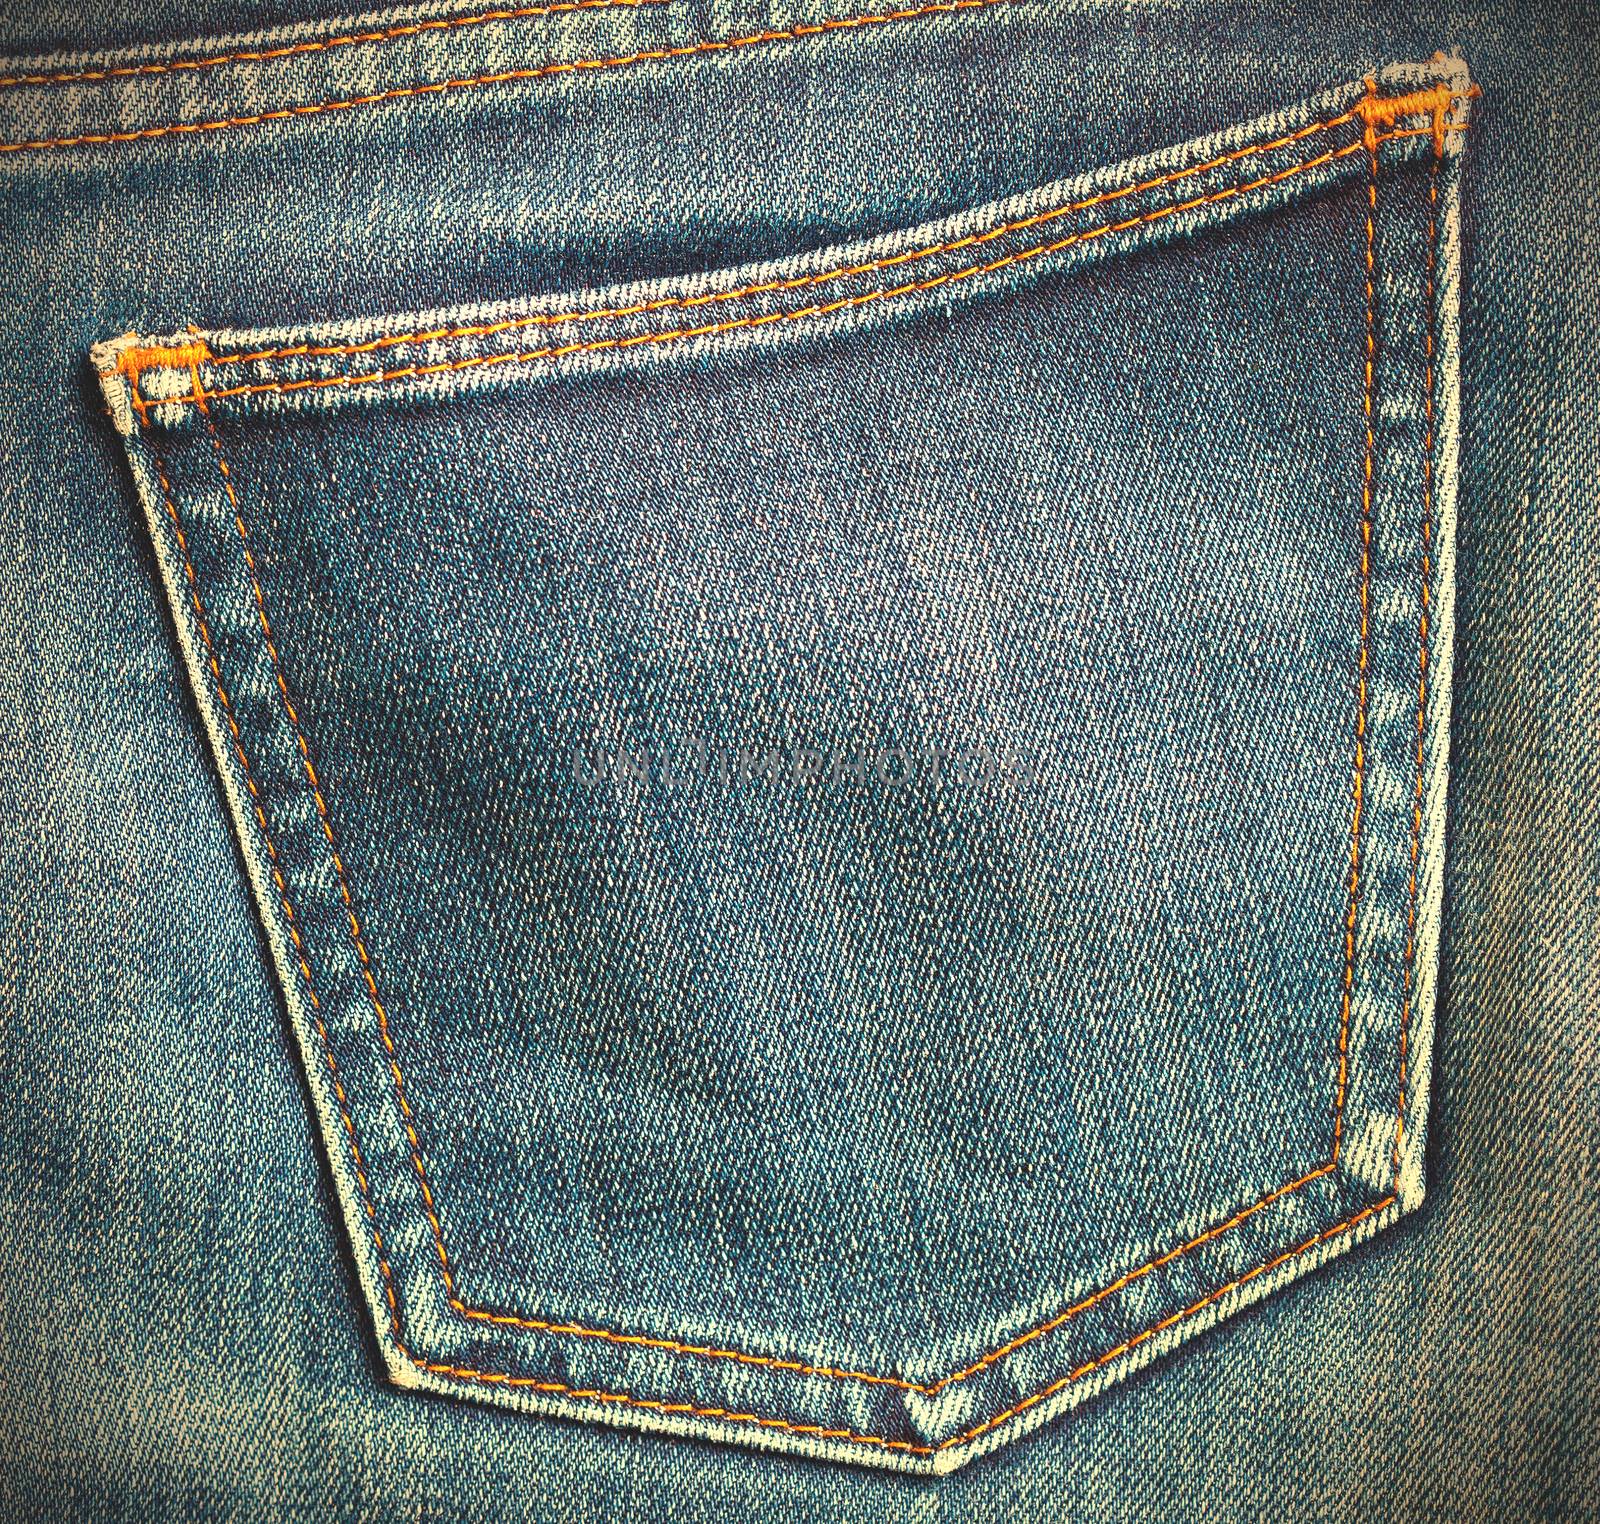 jeans pocket, close up